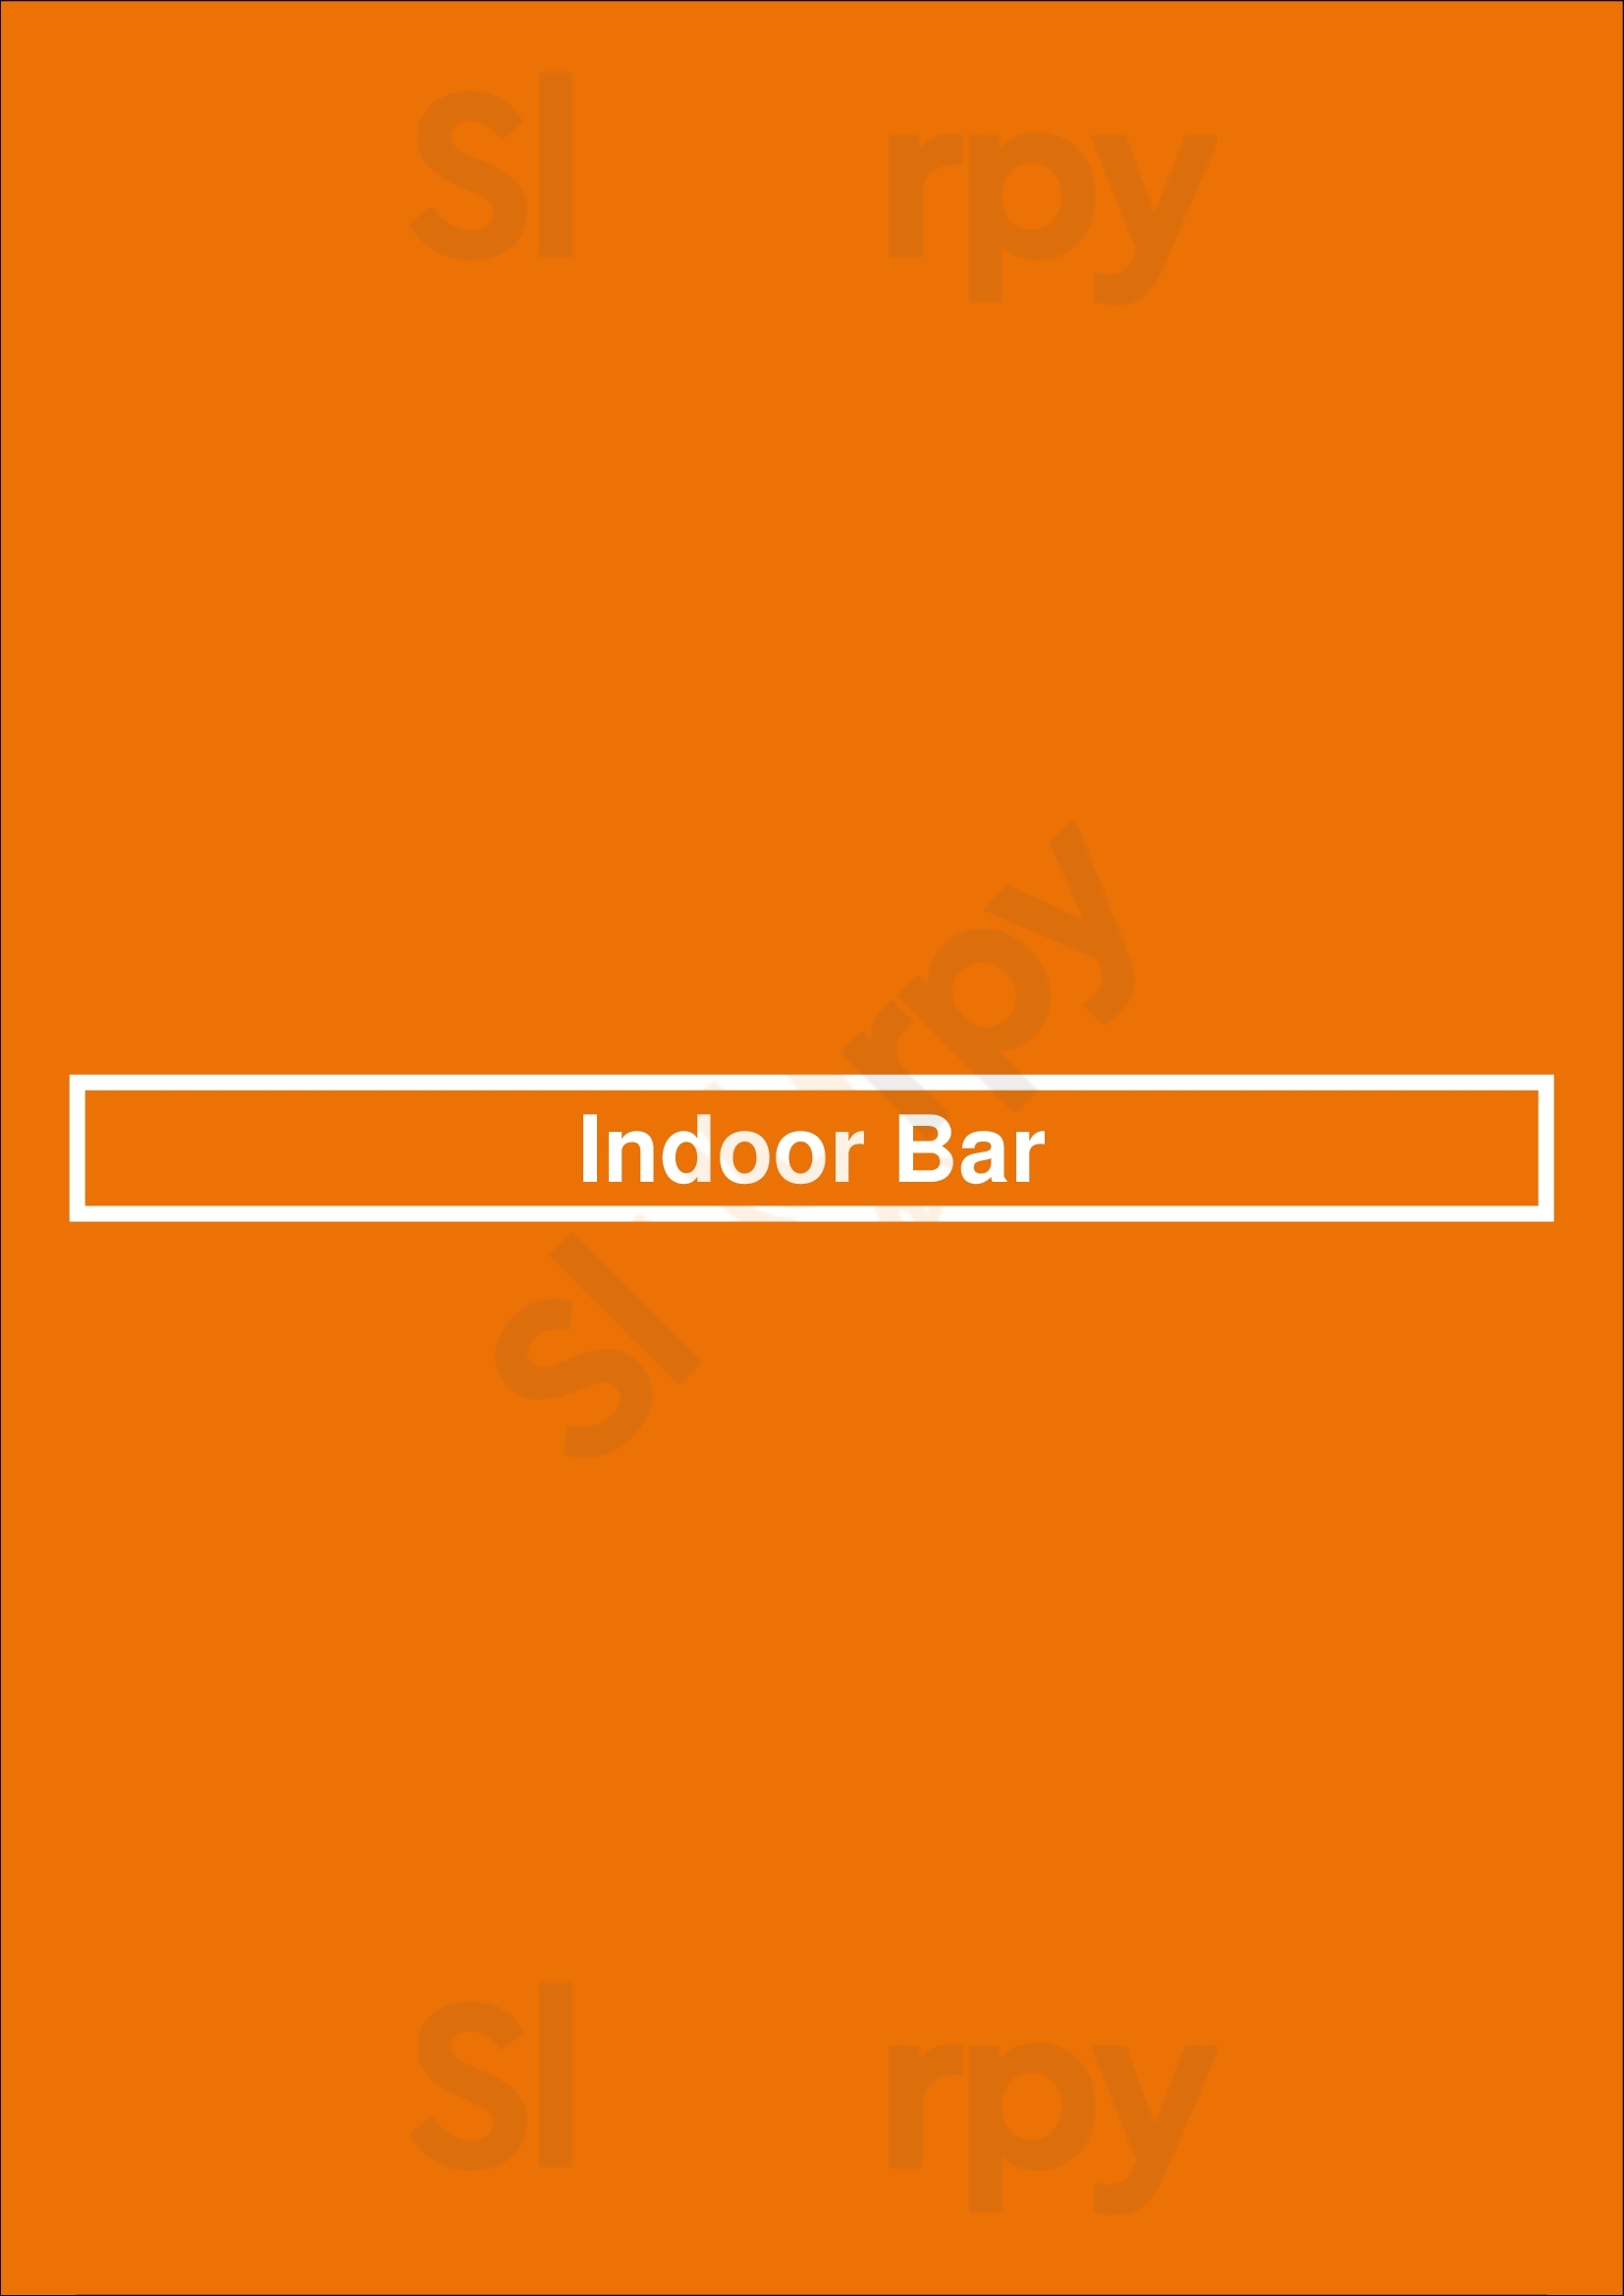 Indoor Bar Buenos Aires Menu - 1